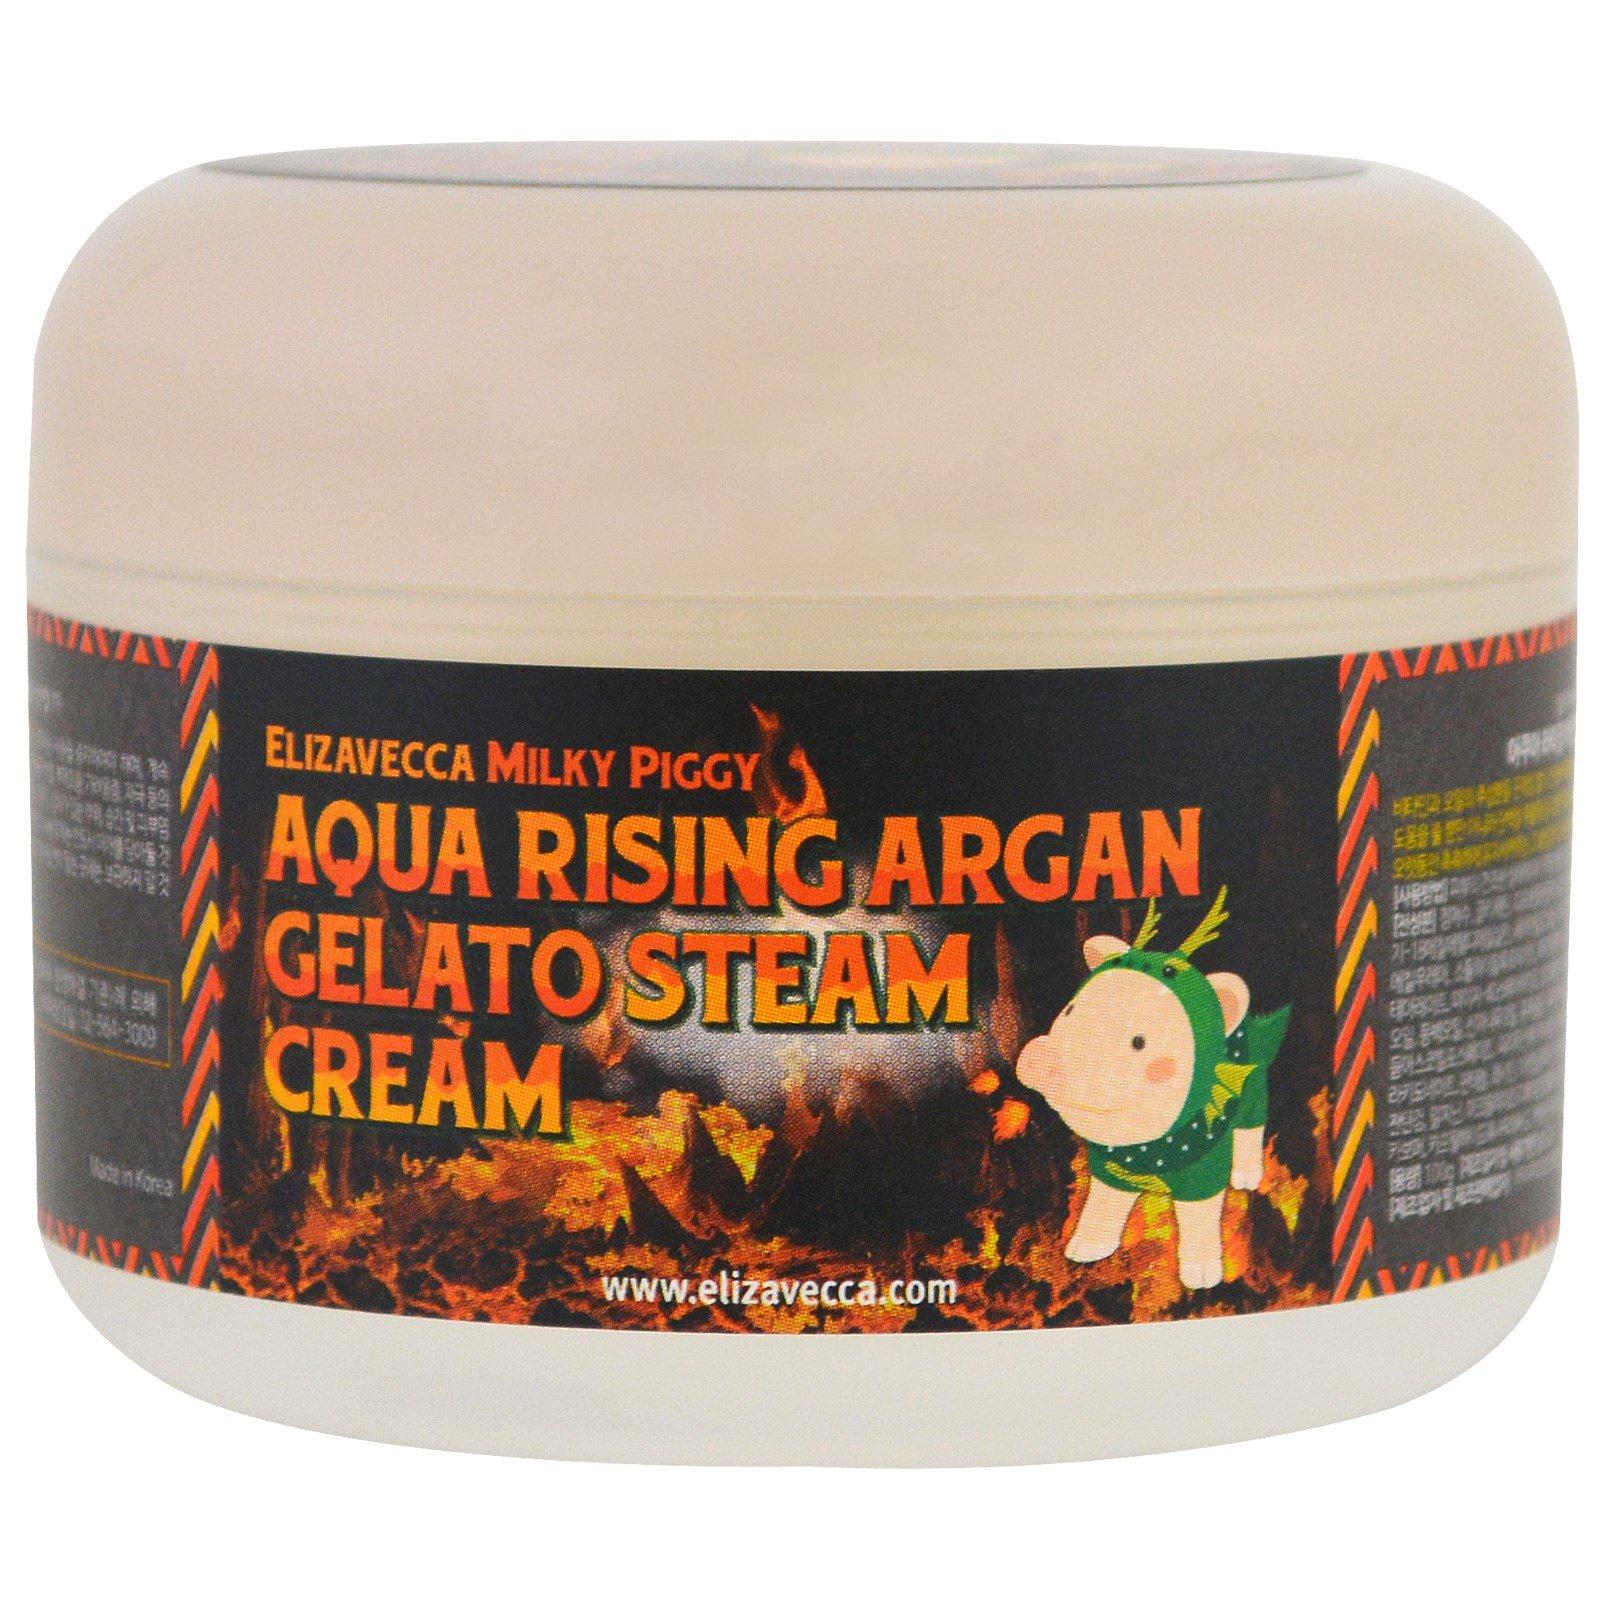 Aqua Rising Argan Gelato Steam Cream